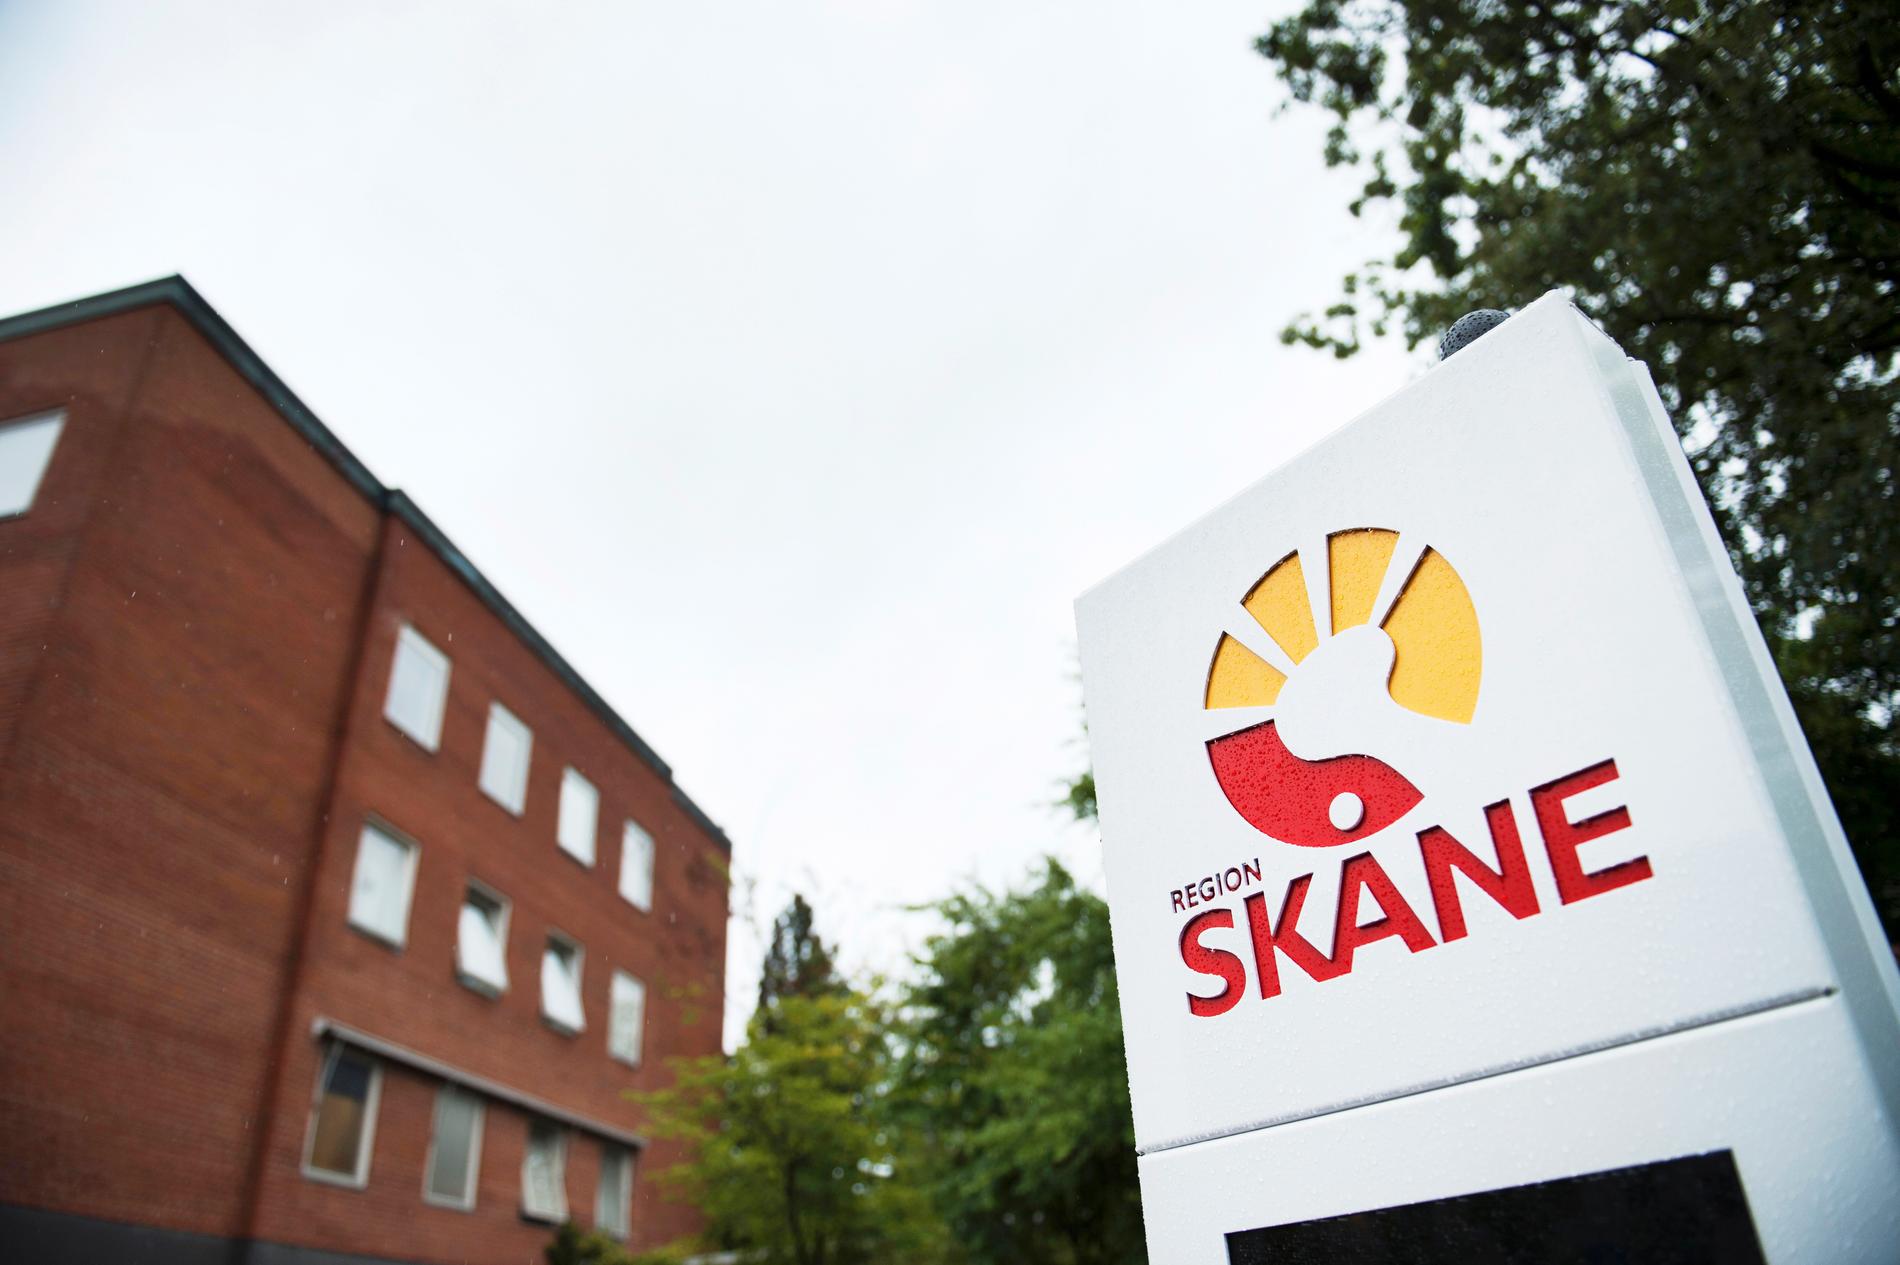 Två fall av mässling har upptäckts i Skåne på kort tid, rapporterar Sydsvenskan. Region Skånes smittskyddsenhet uppmanar nu till försiktighet. Arkivbild.